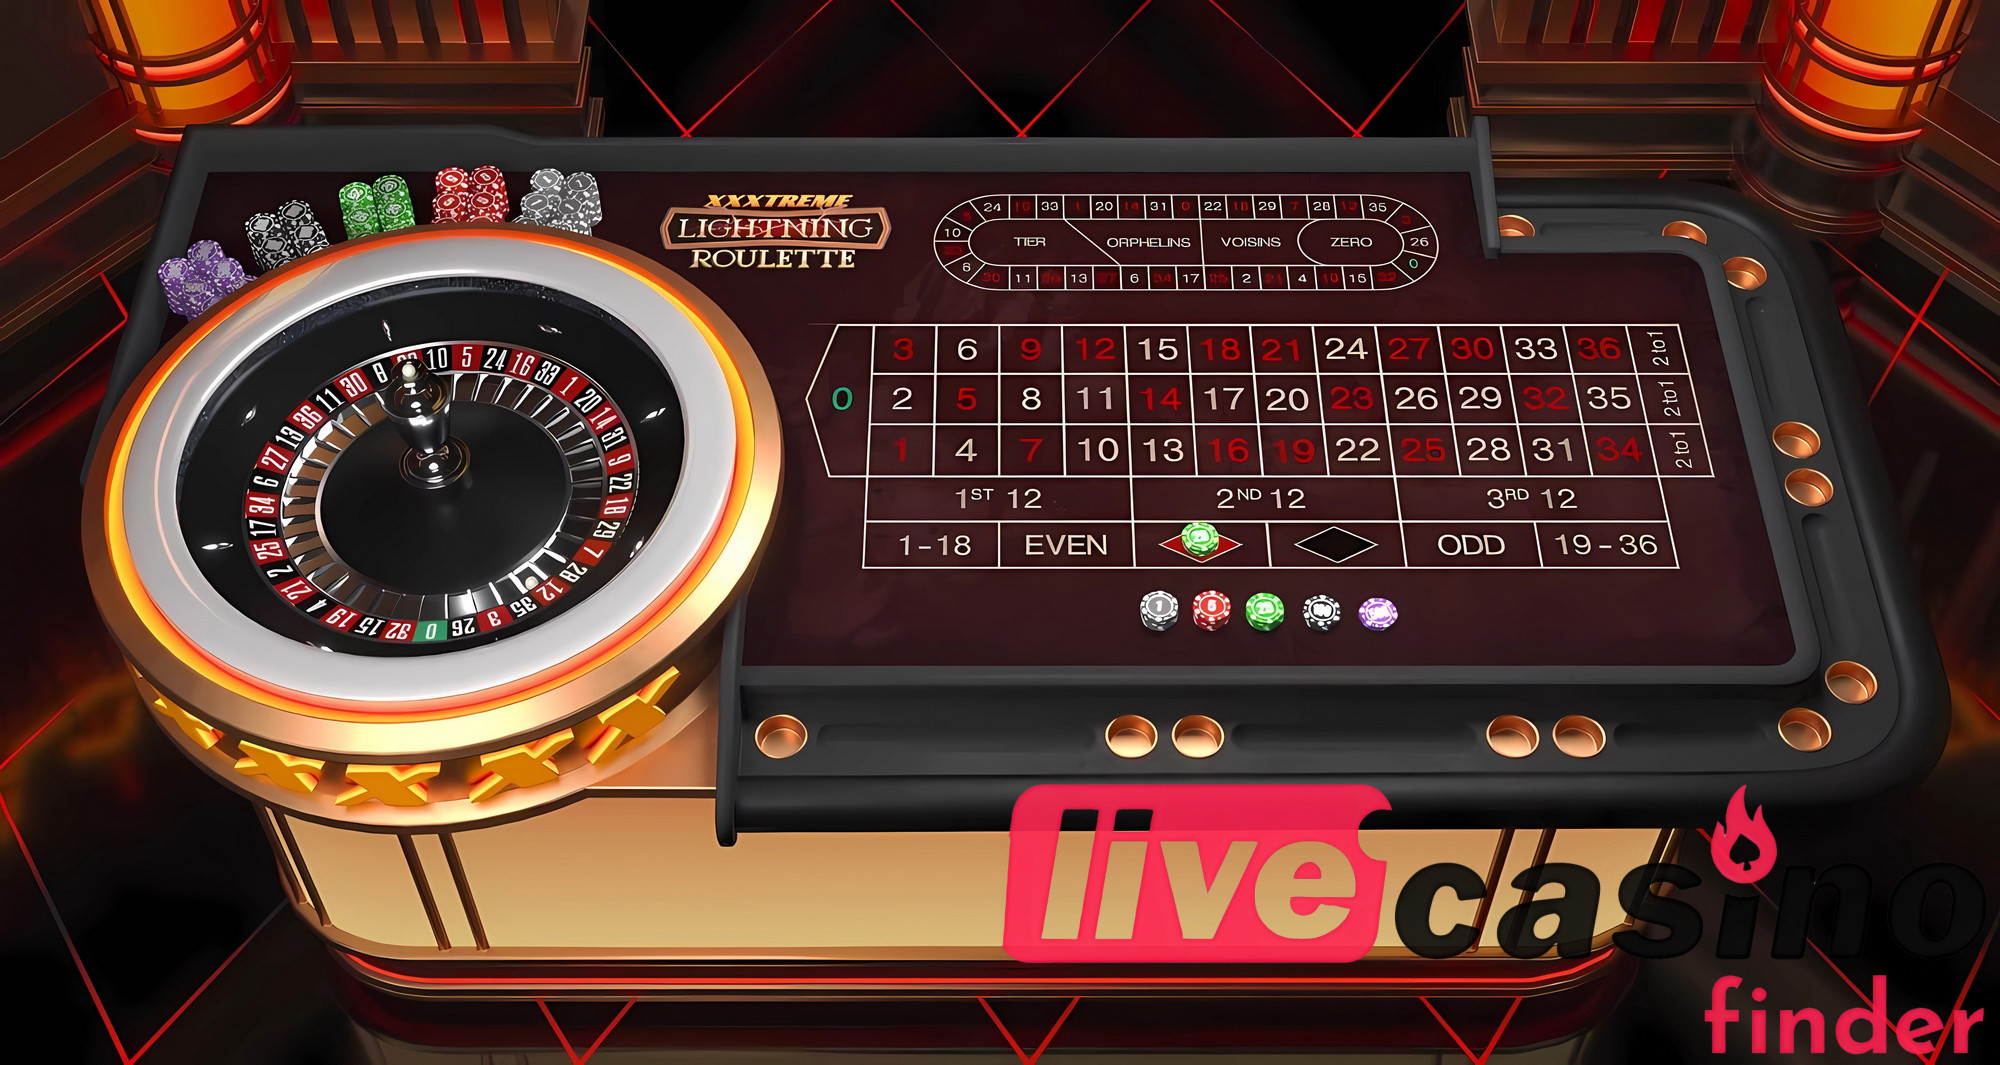 Joc de cazinou live XXXtreme Lightning Roulette.